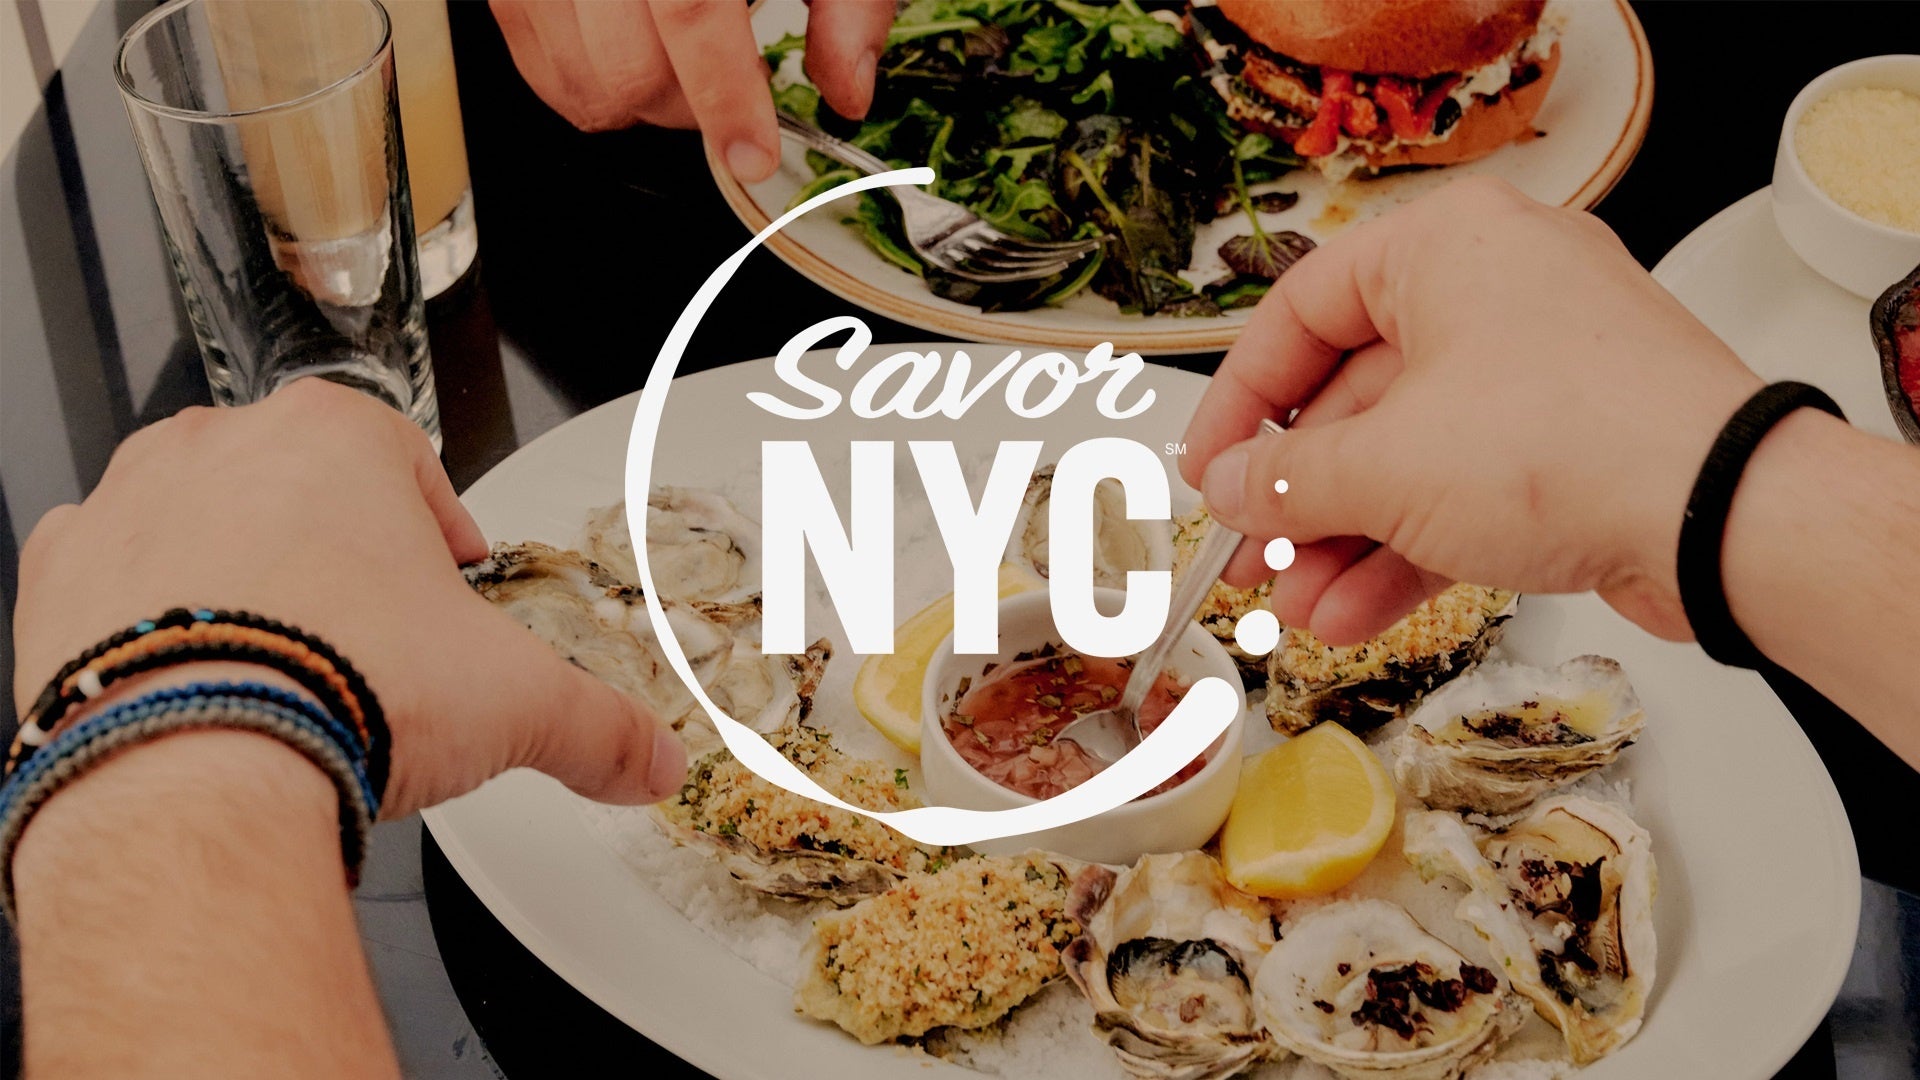 ニューヨーク市観光局が新たに展開する食のプログラム「Savor NYC」がスタート